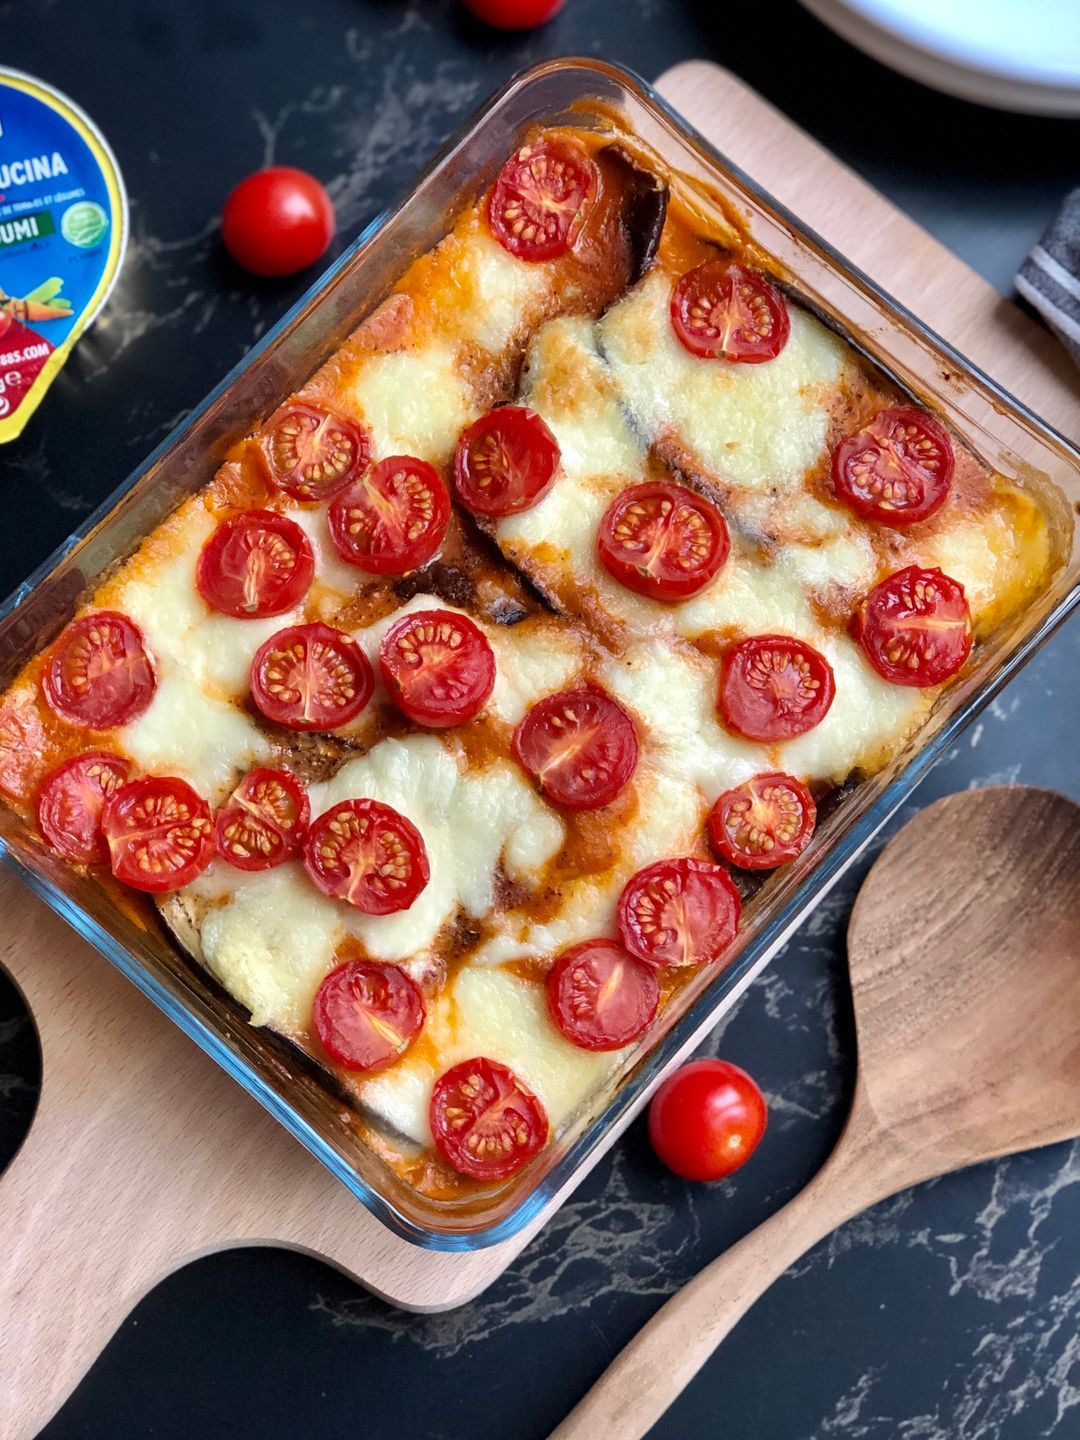 Roasted eggplant lasagna